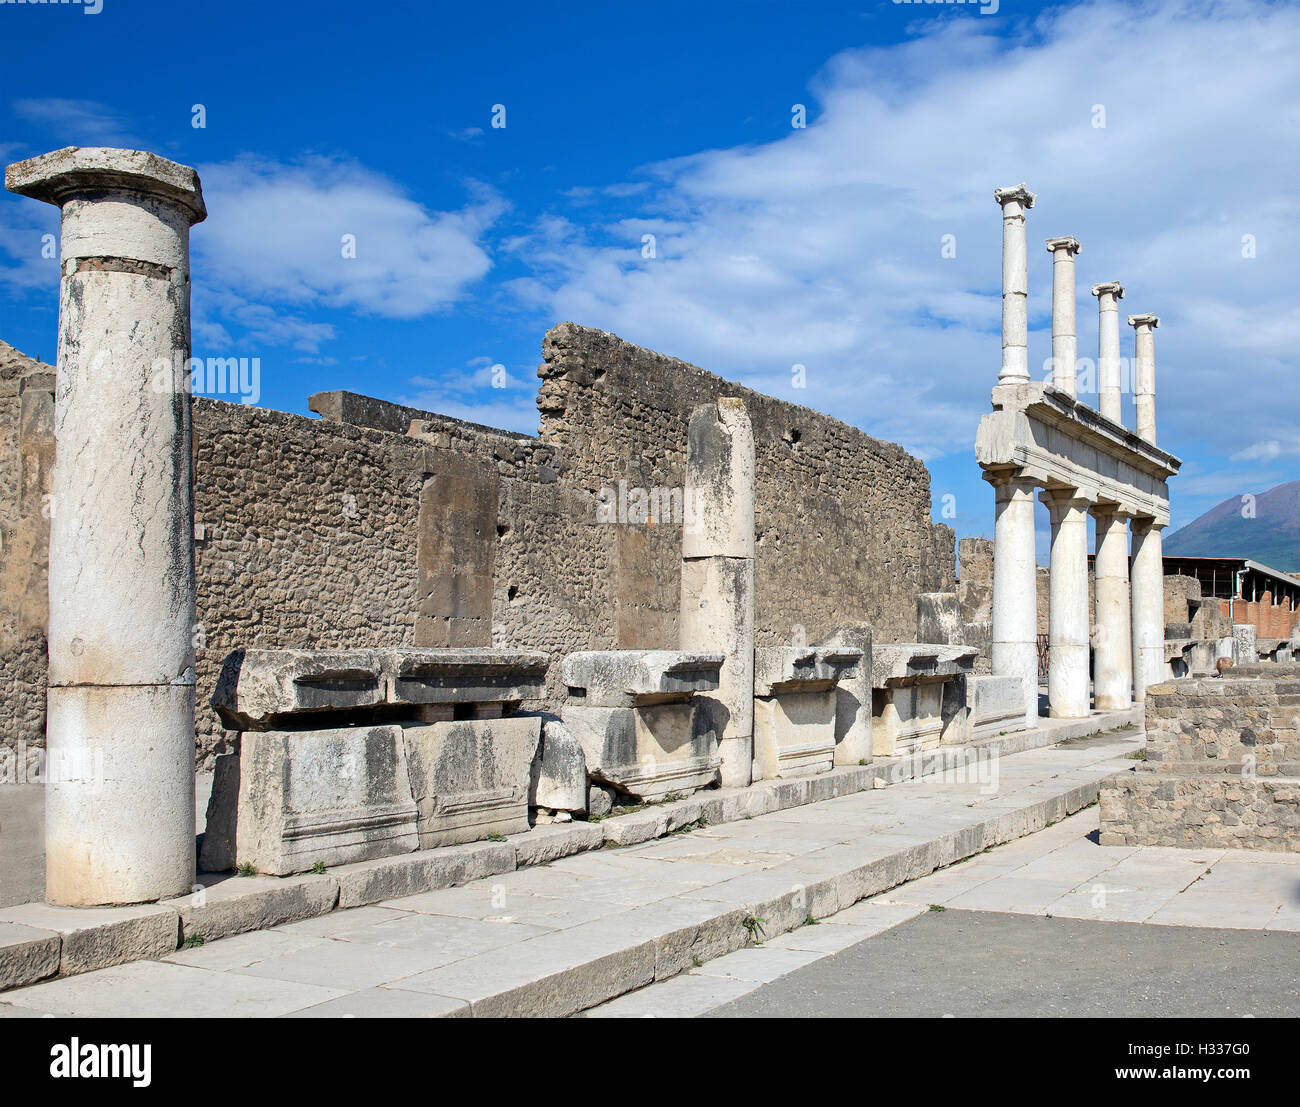 Ancient Roman city of Pompeii, Stock Photo